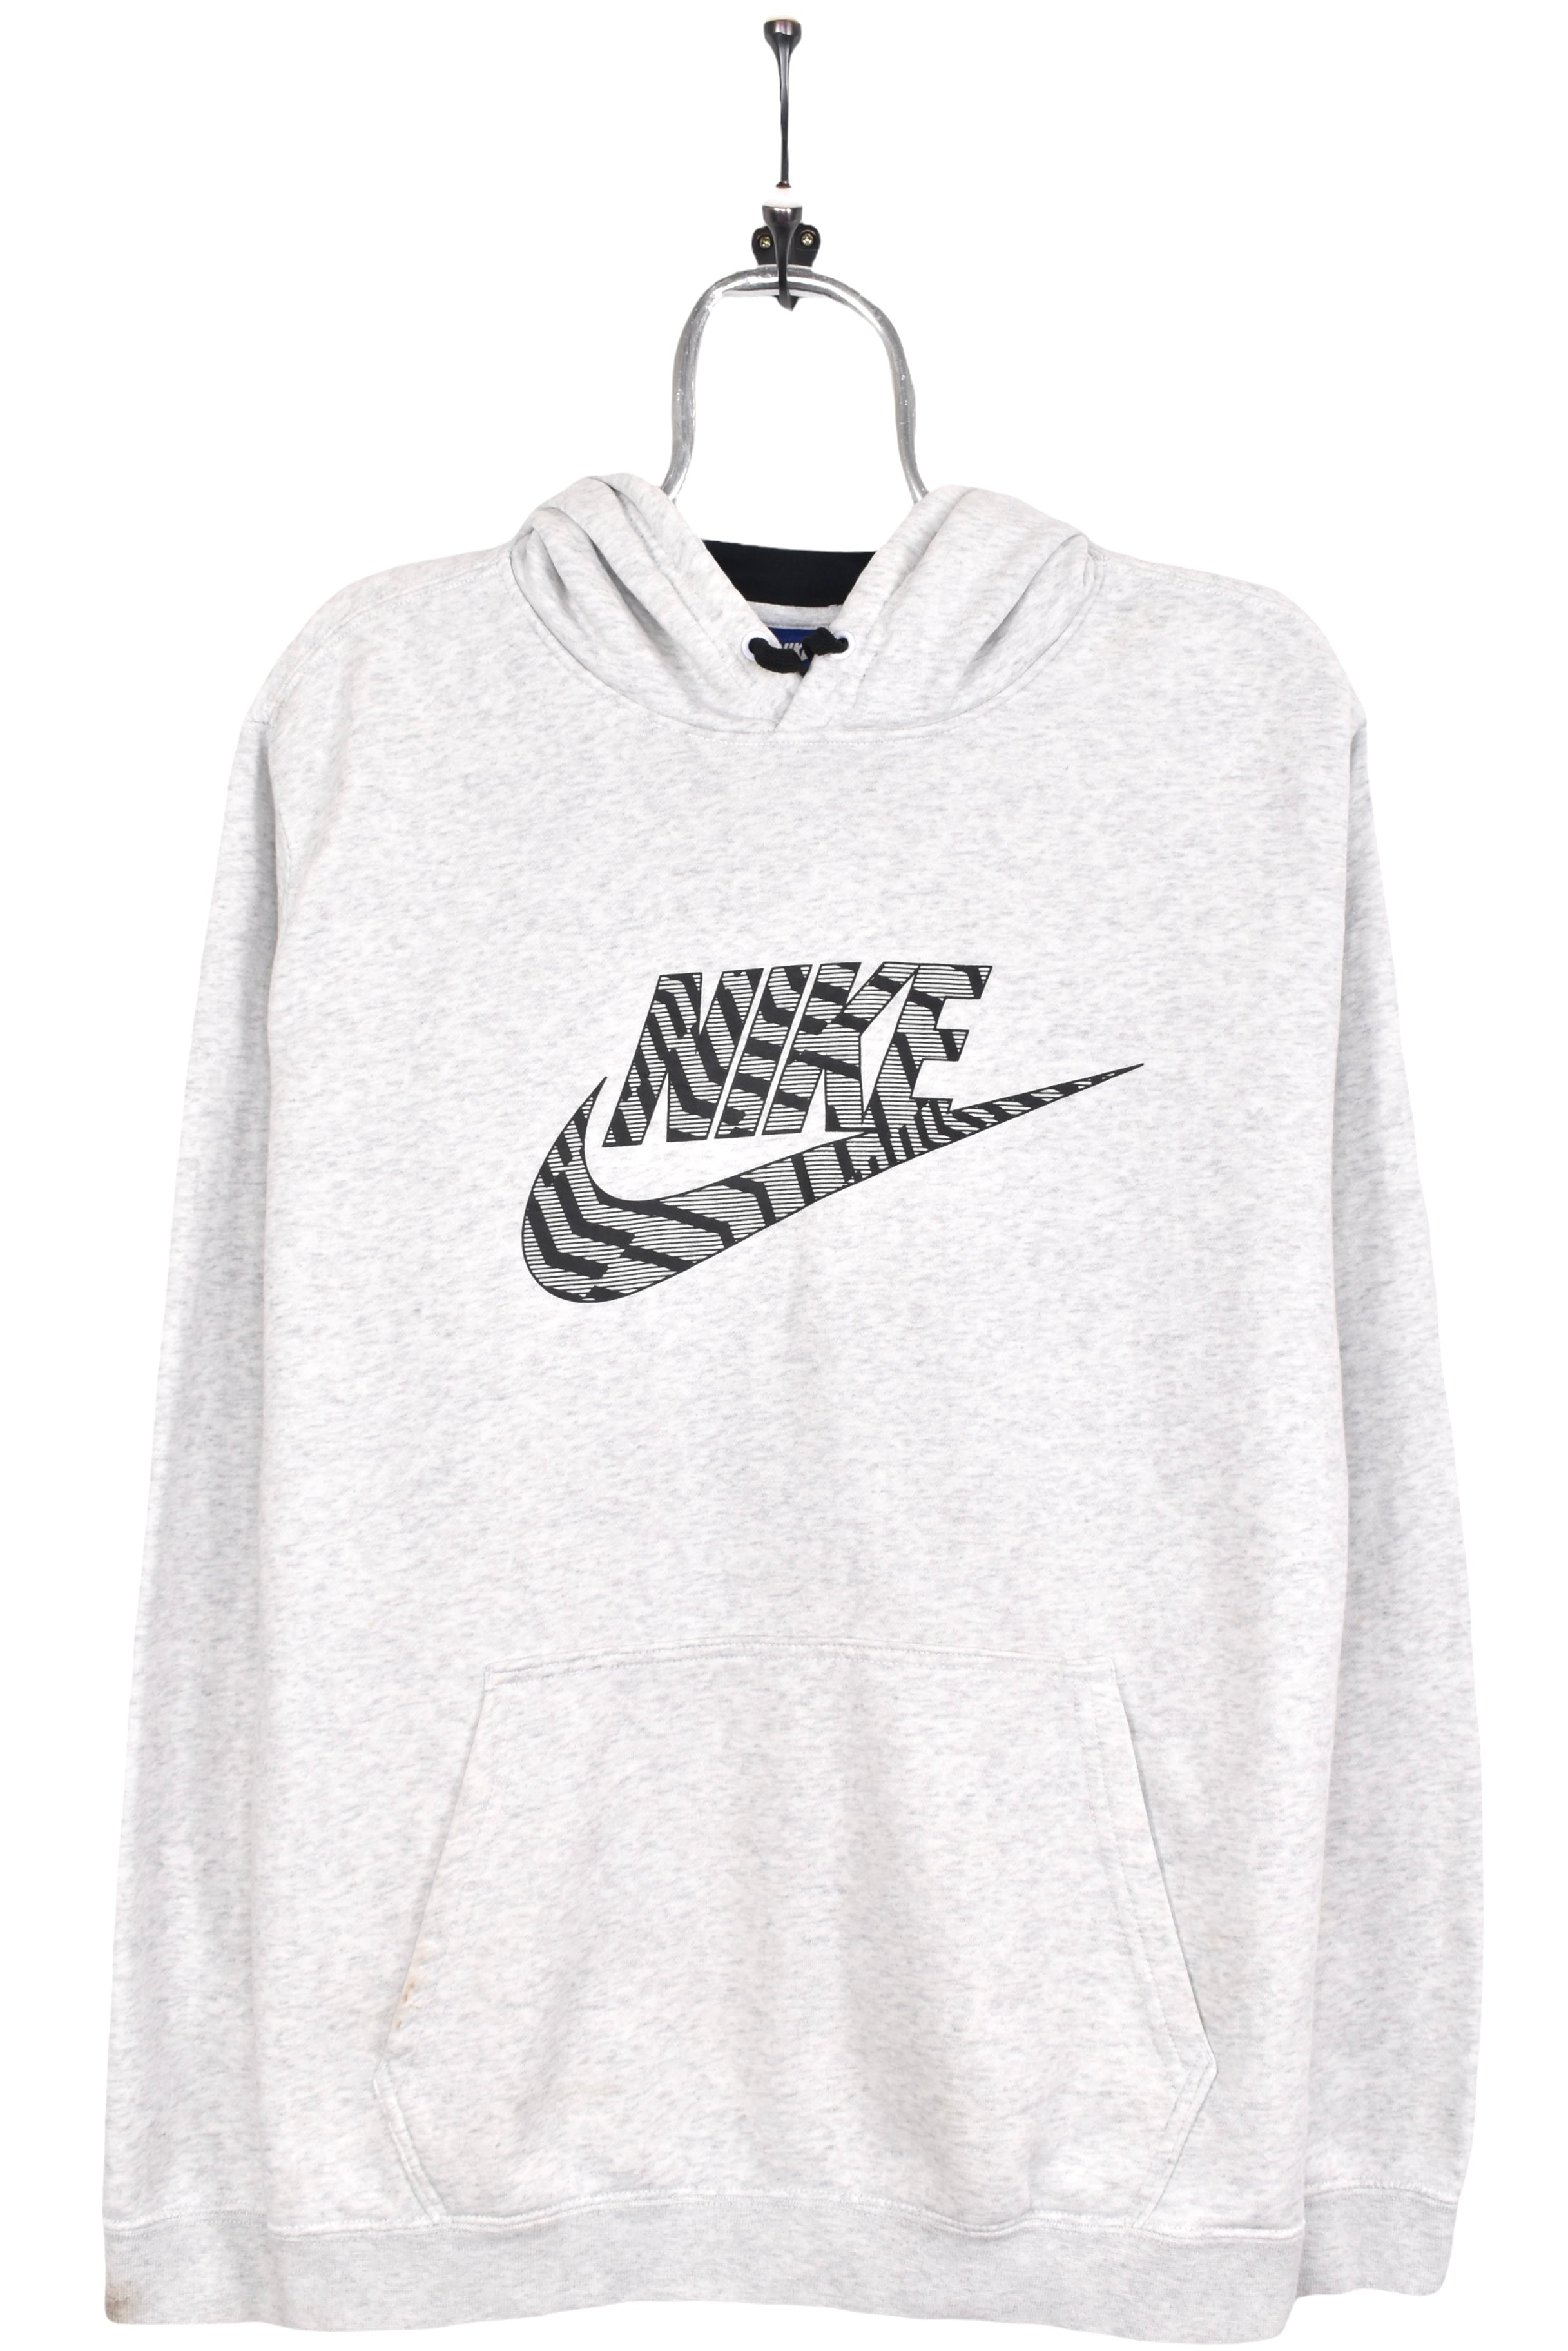 Vintage Nike hoodie, grey graphic sweatshirt - AU Large NIKE